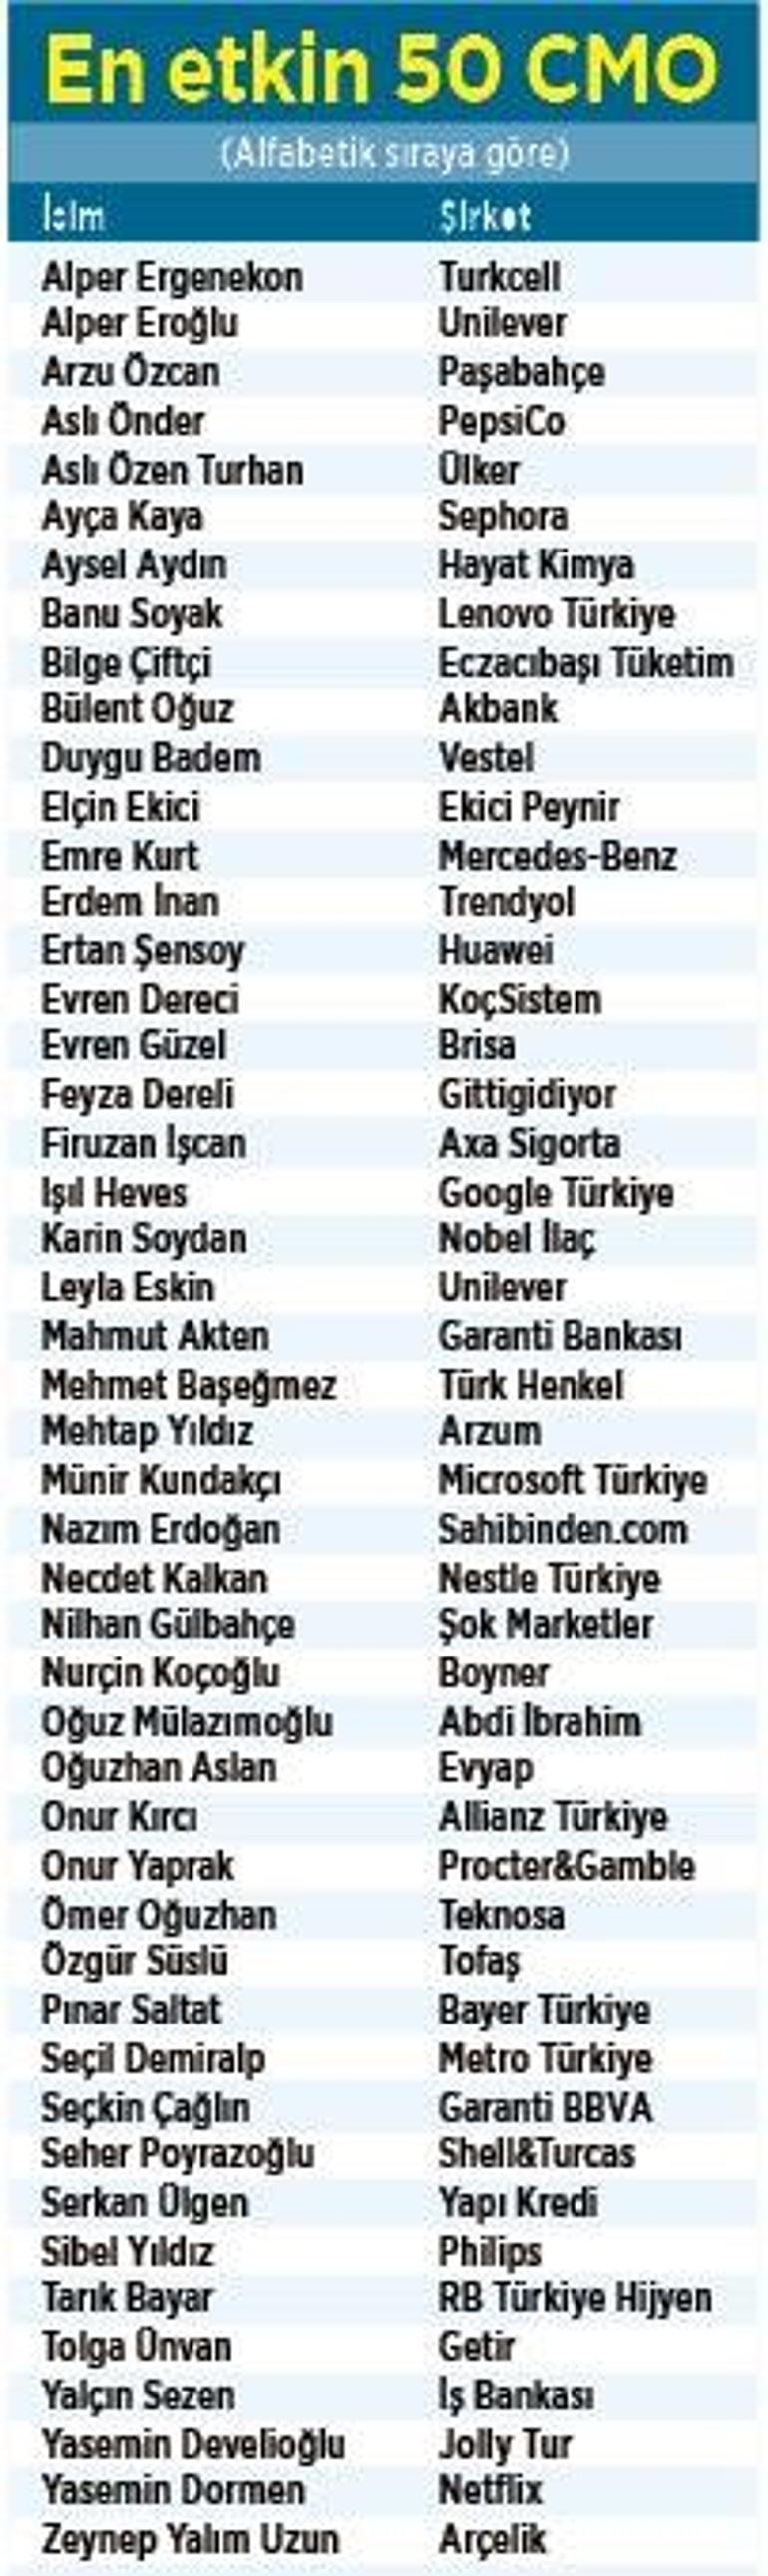 Türkiye’nin en etkin 50 pazarlama yöneticisi